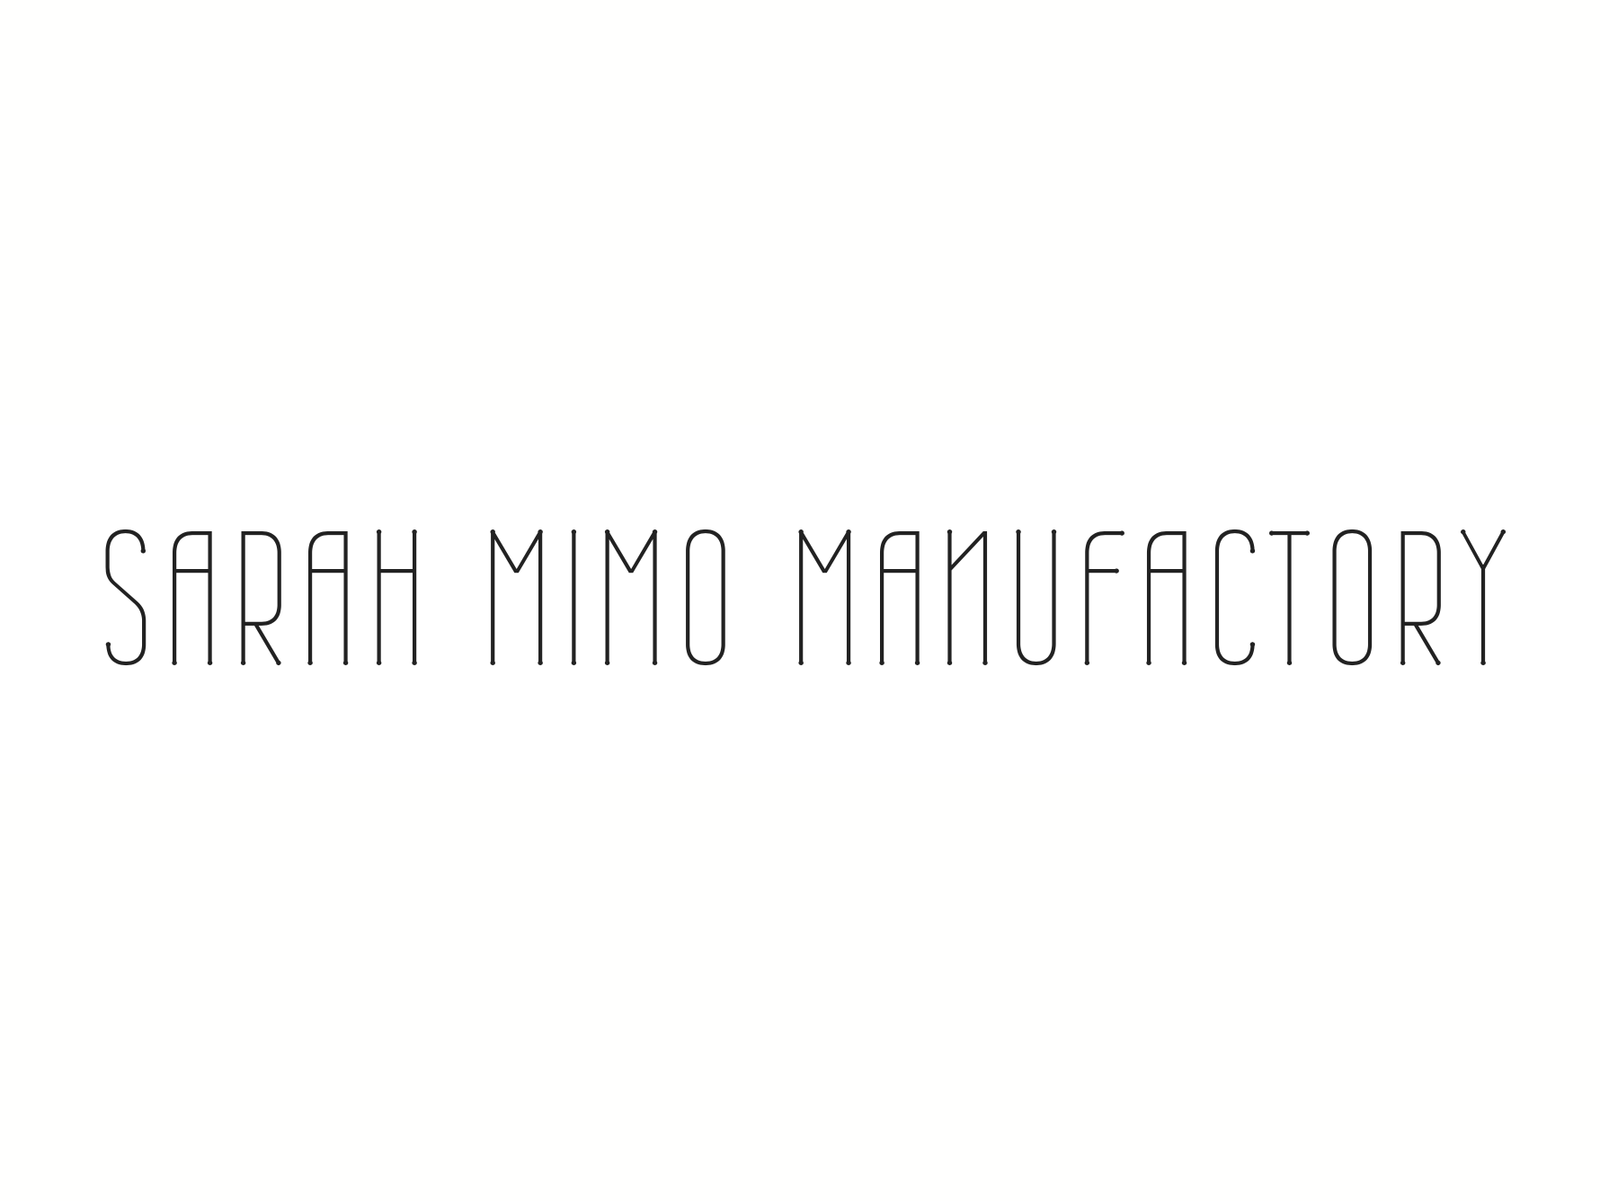 Sarah Mimo Manufactory